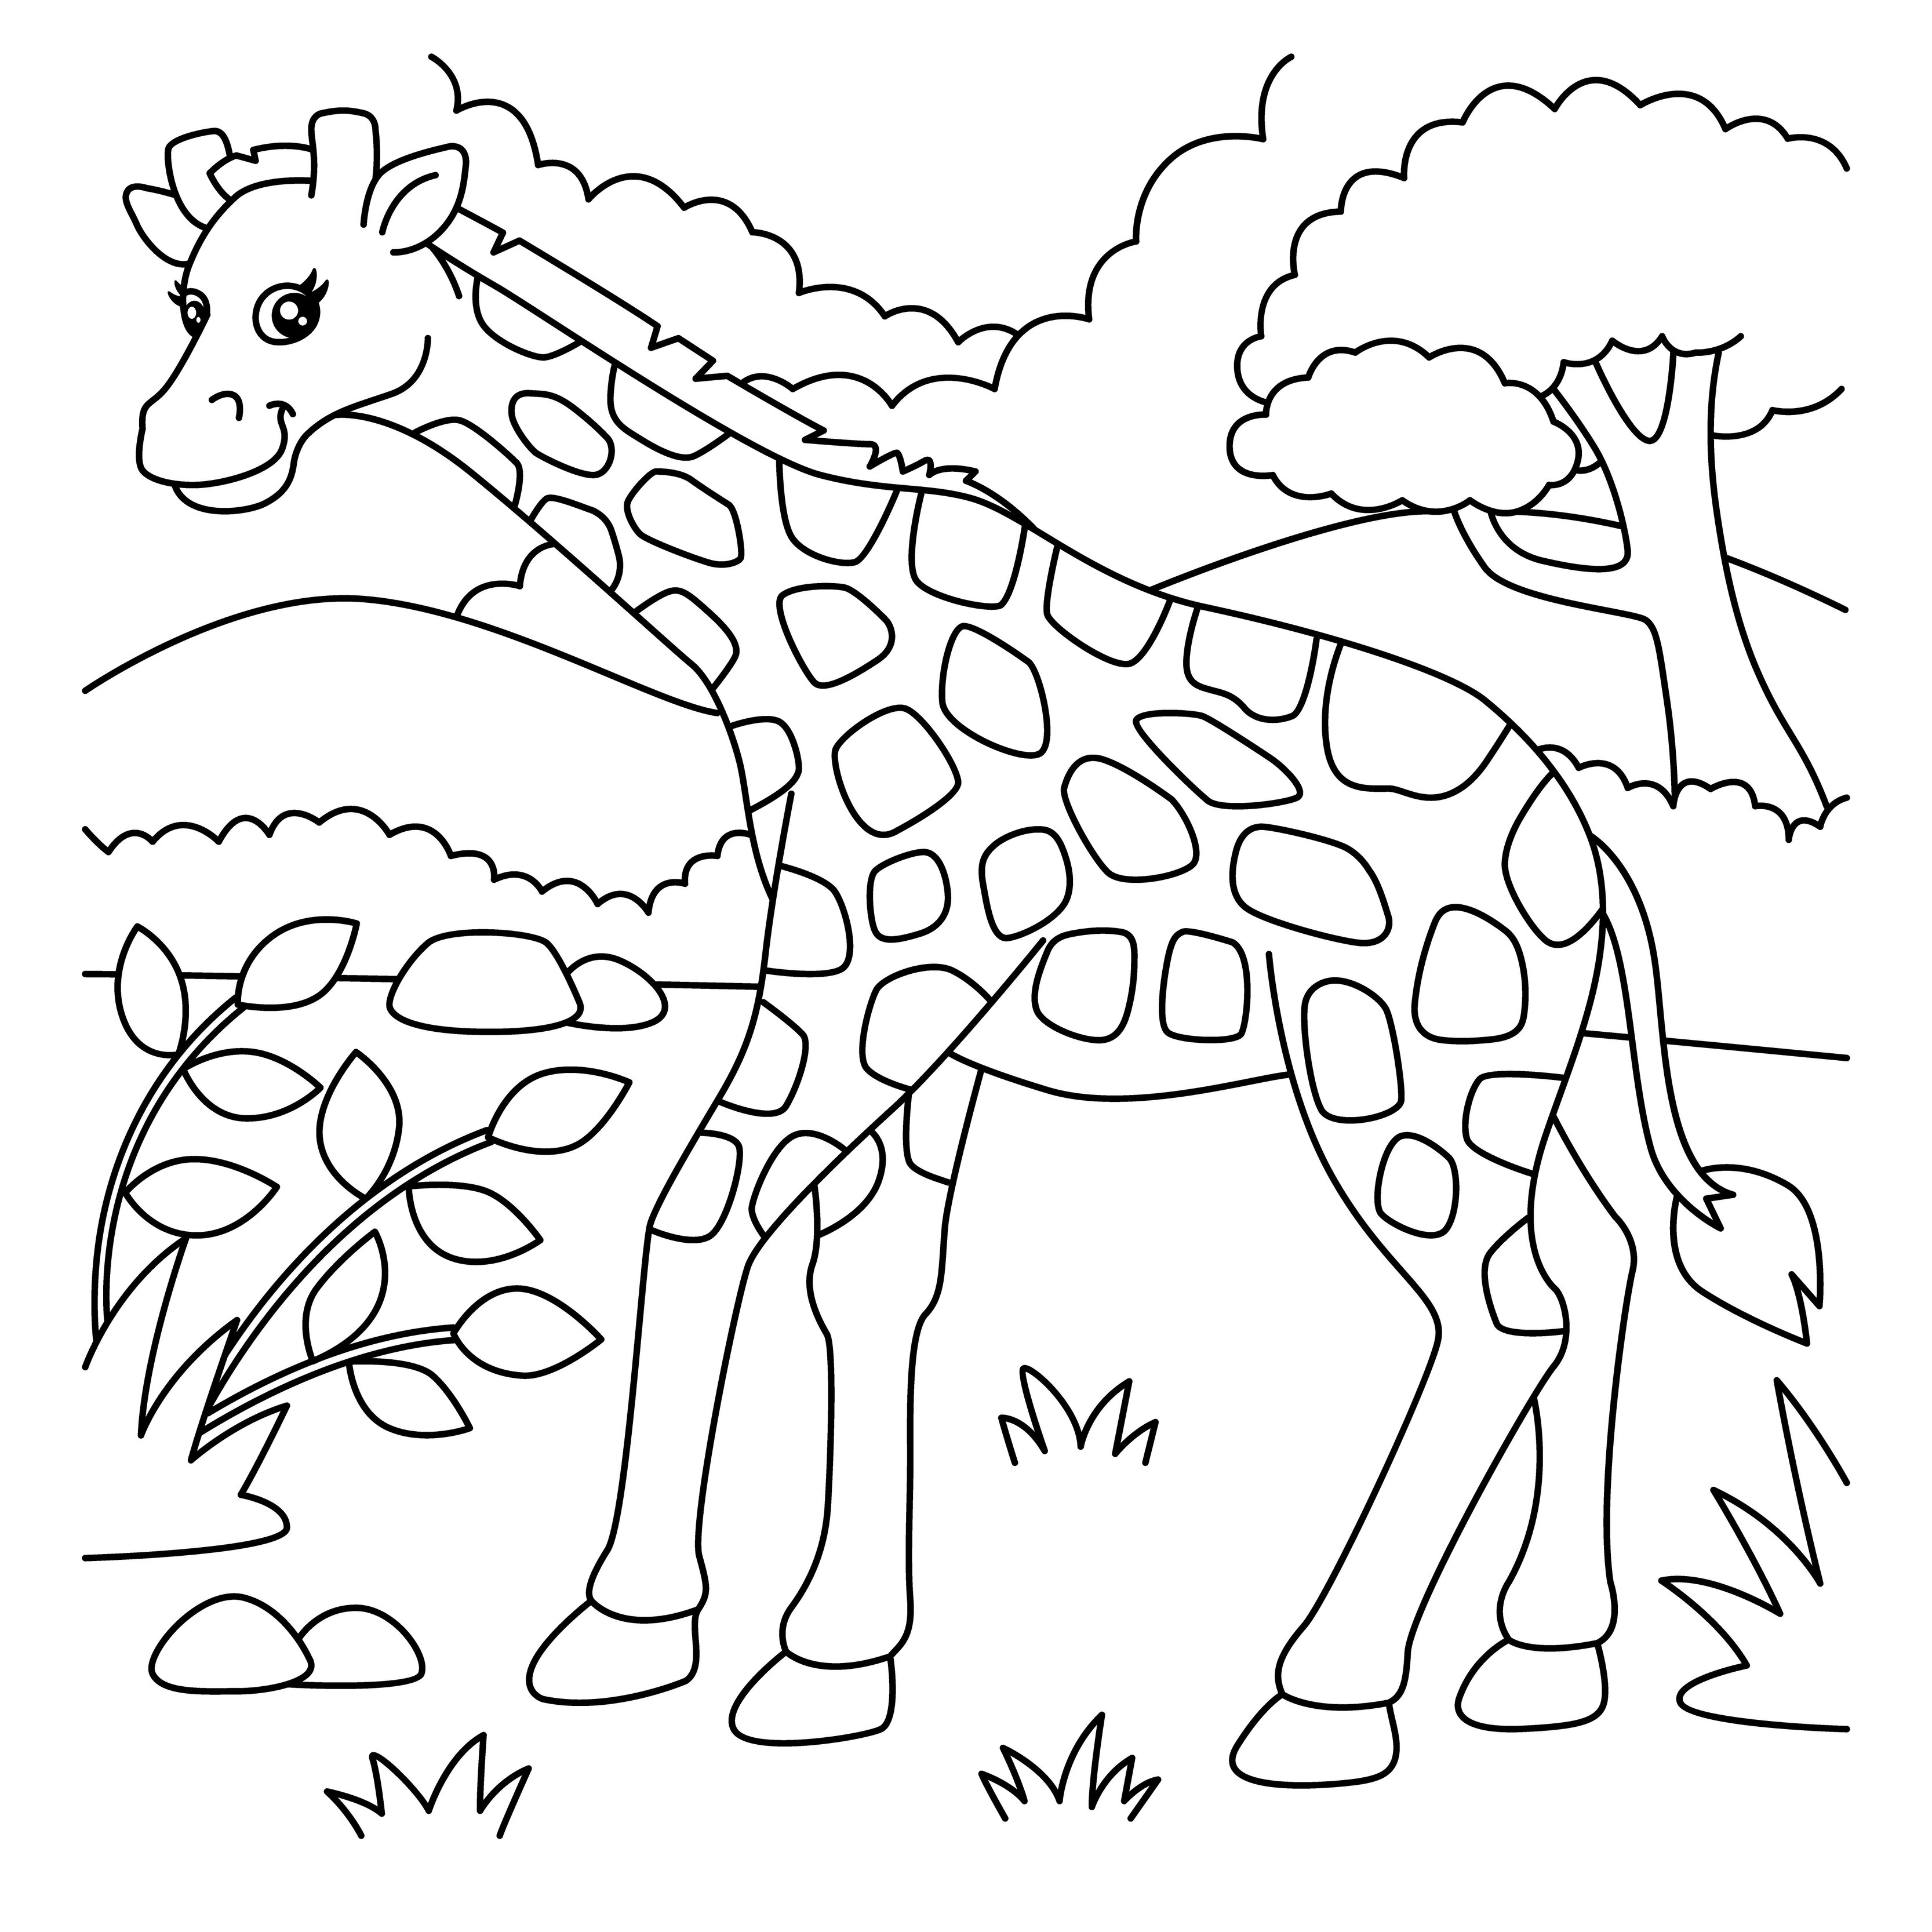 Жираф раскраска для детей дошкольного возраста